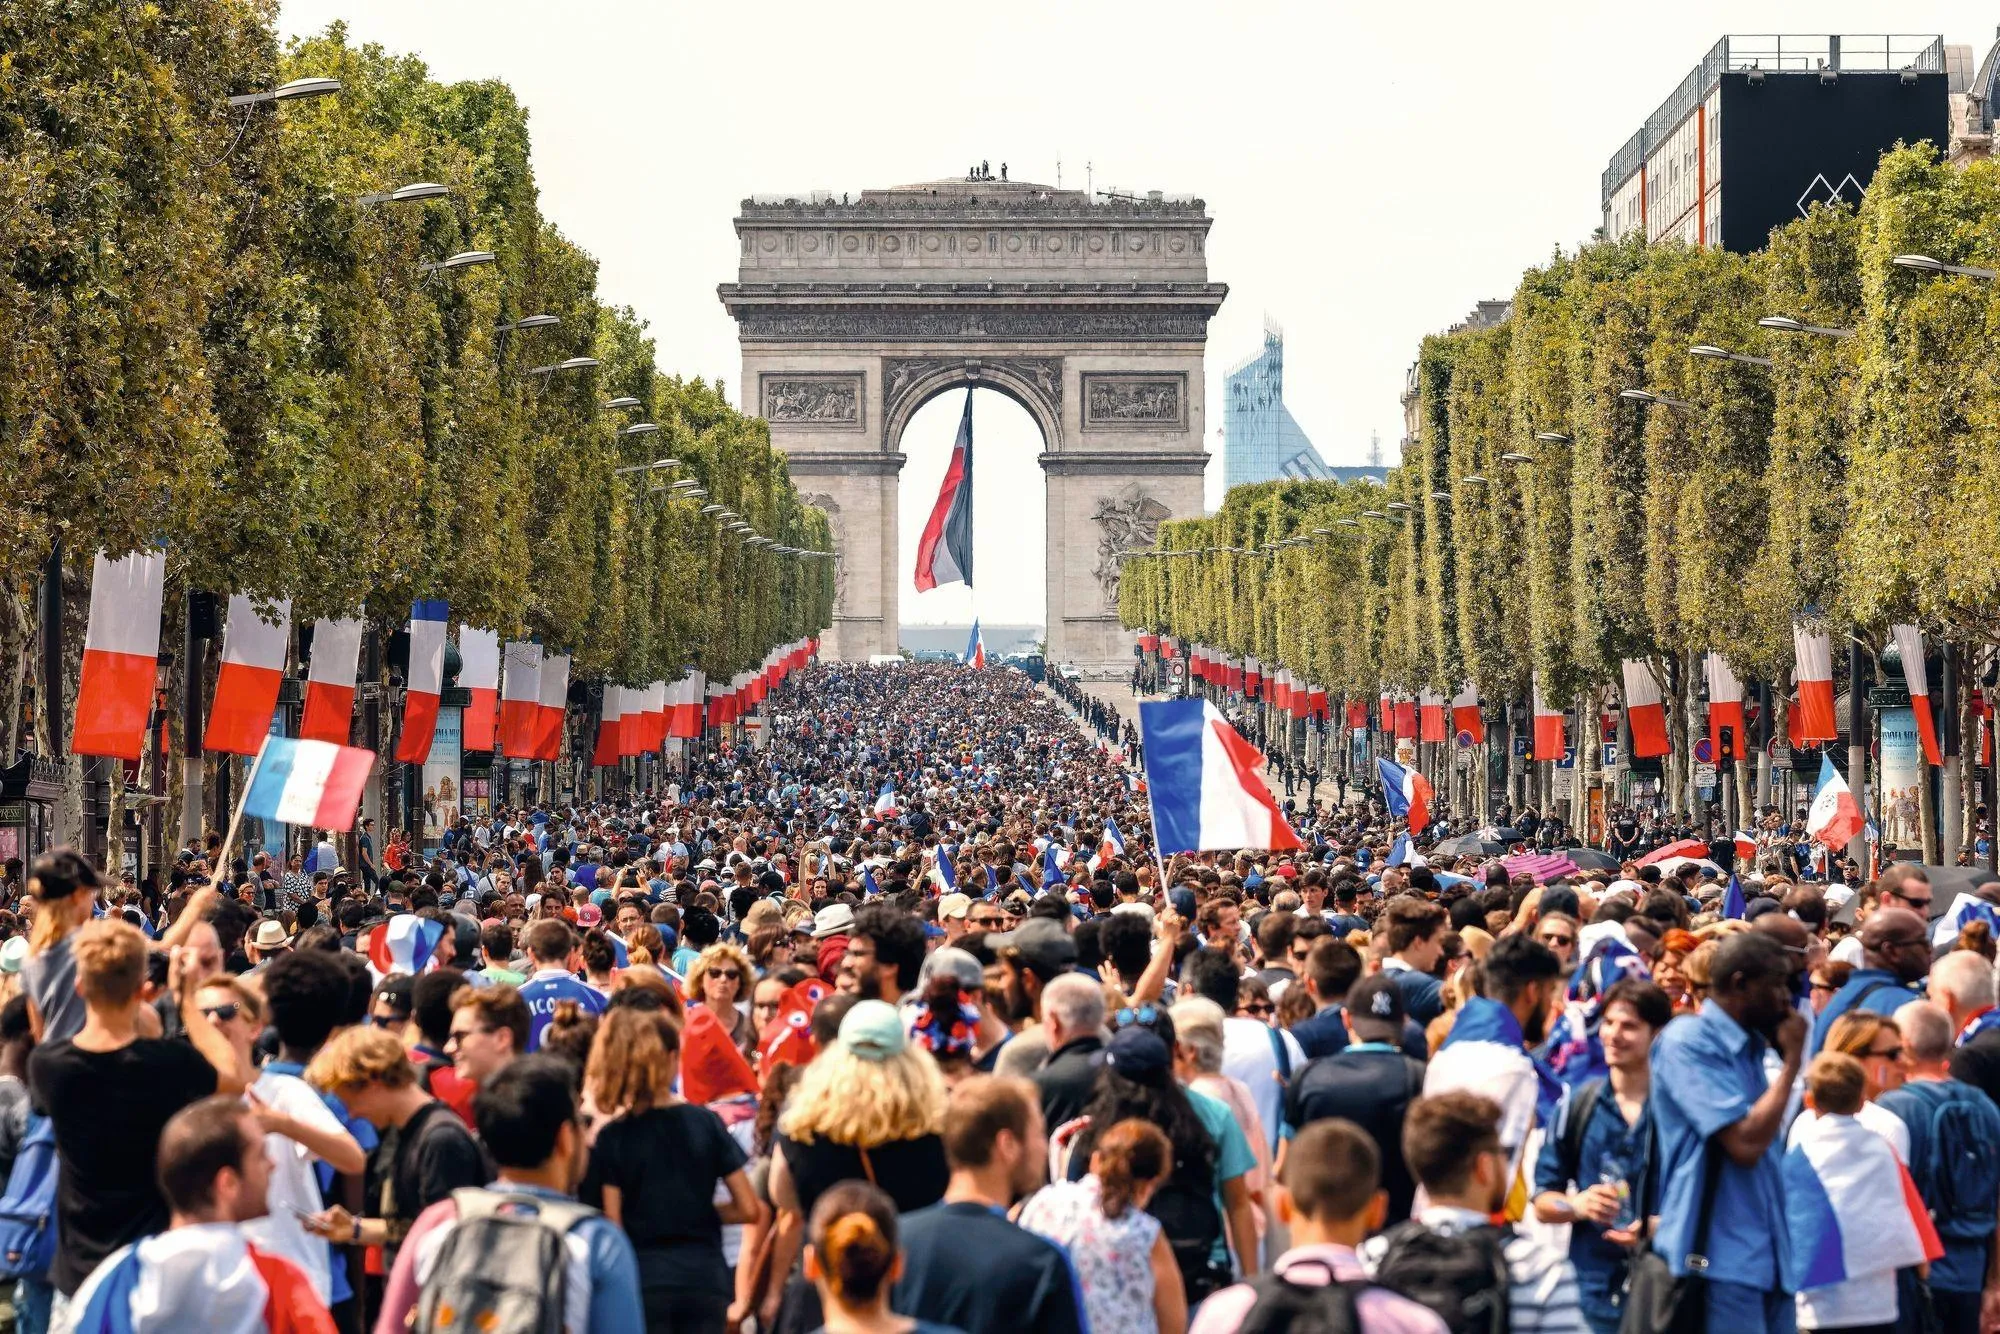 Les Champs-Élysées après la victoire de l'équipe de France en fi nale de la coupe du monde de football, juillet 2018.